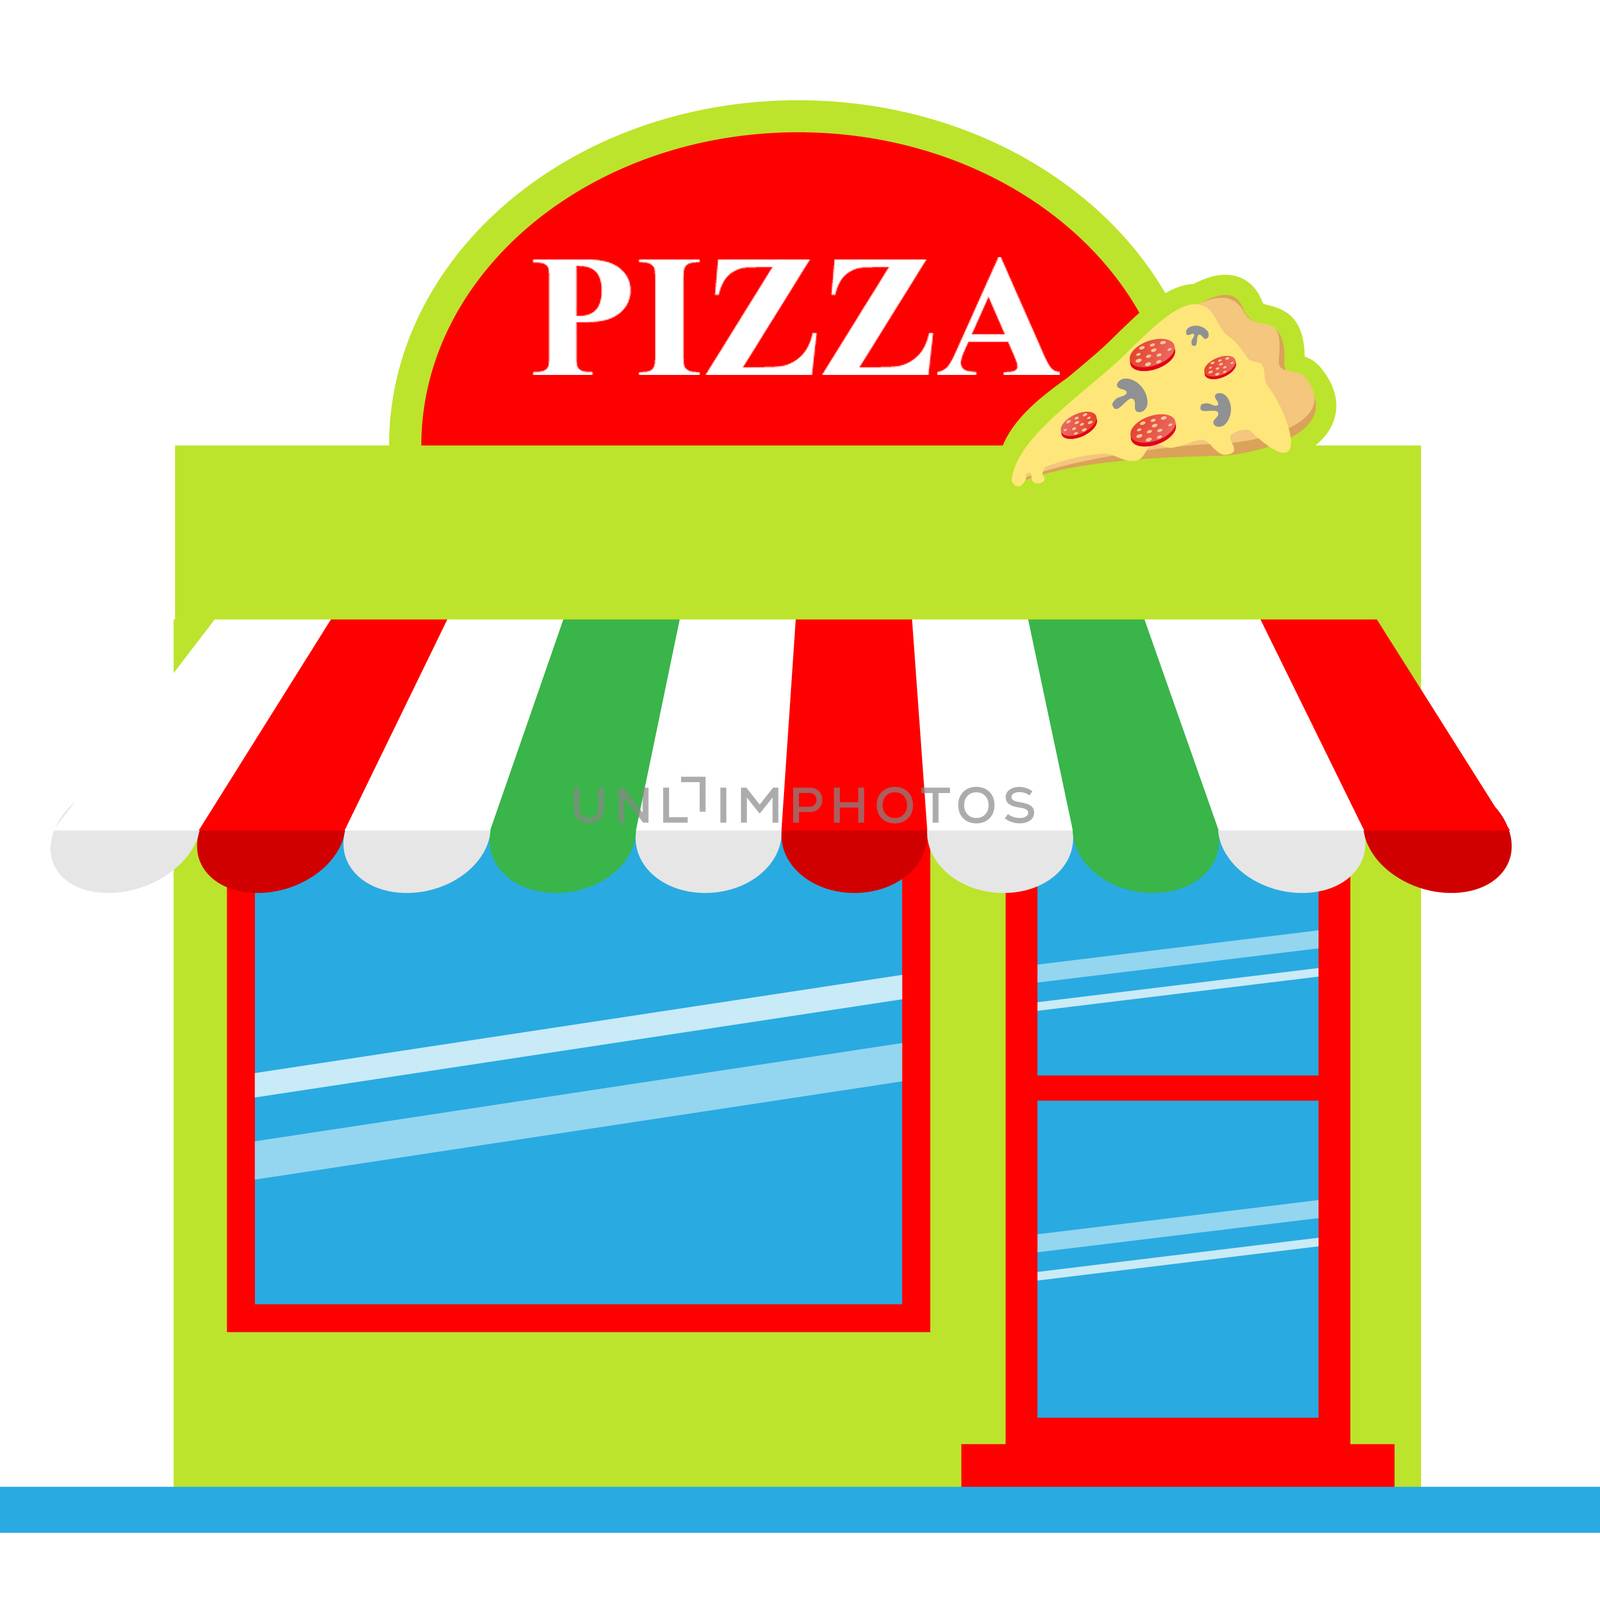 Pizza Shop Means Pizzeria Restaurant 3d Illustration by stuartmiles